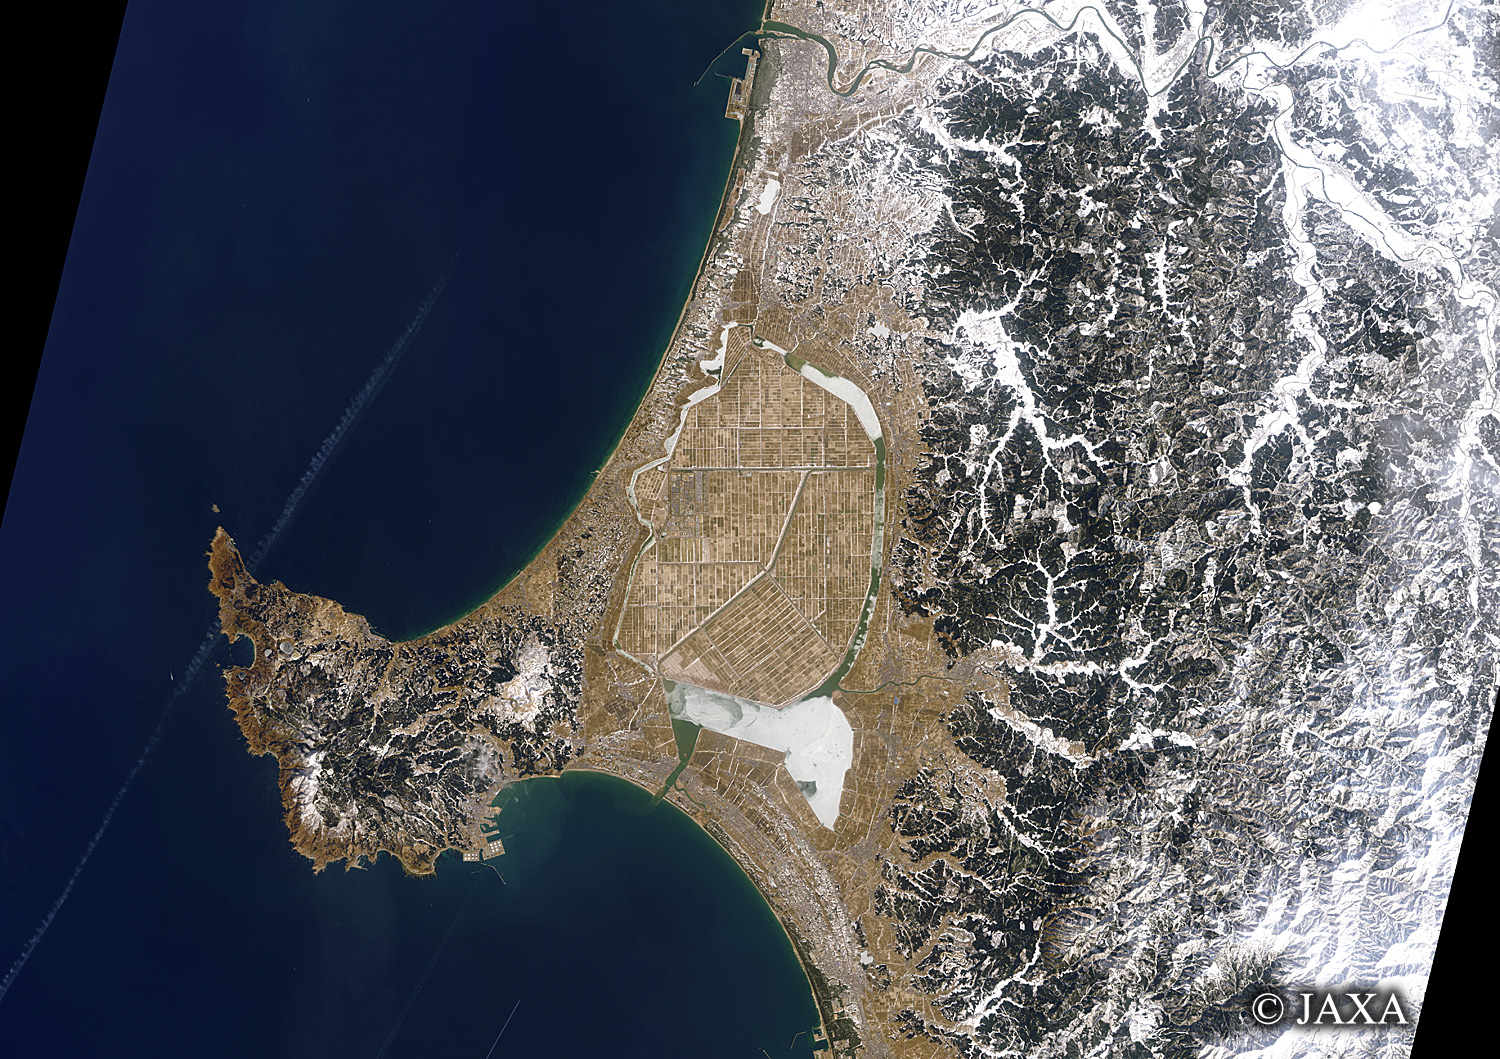 だいちから見た日本の都市 男鹿半島と八郎潟:衛星画像